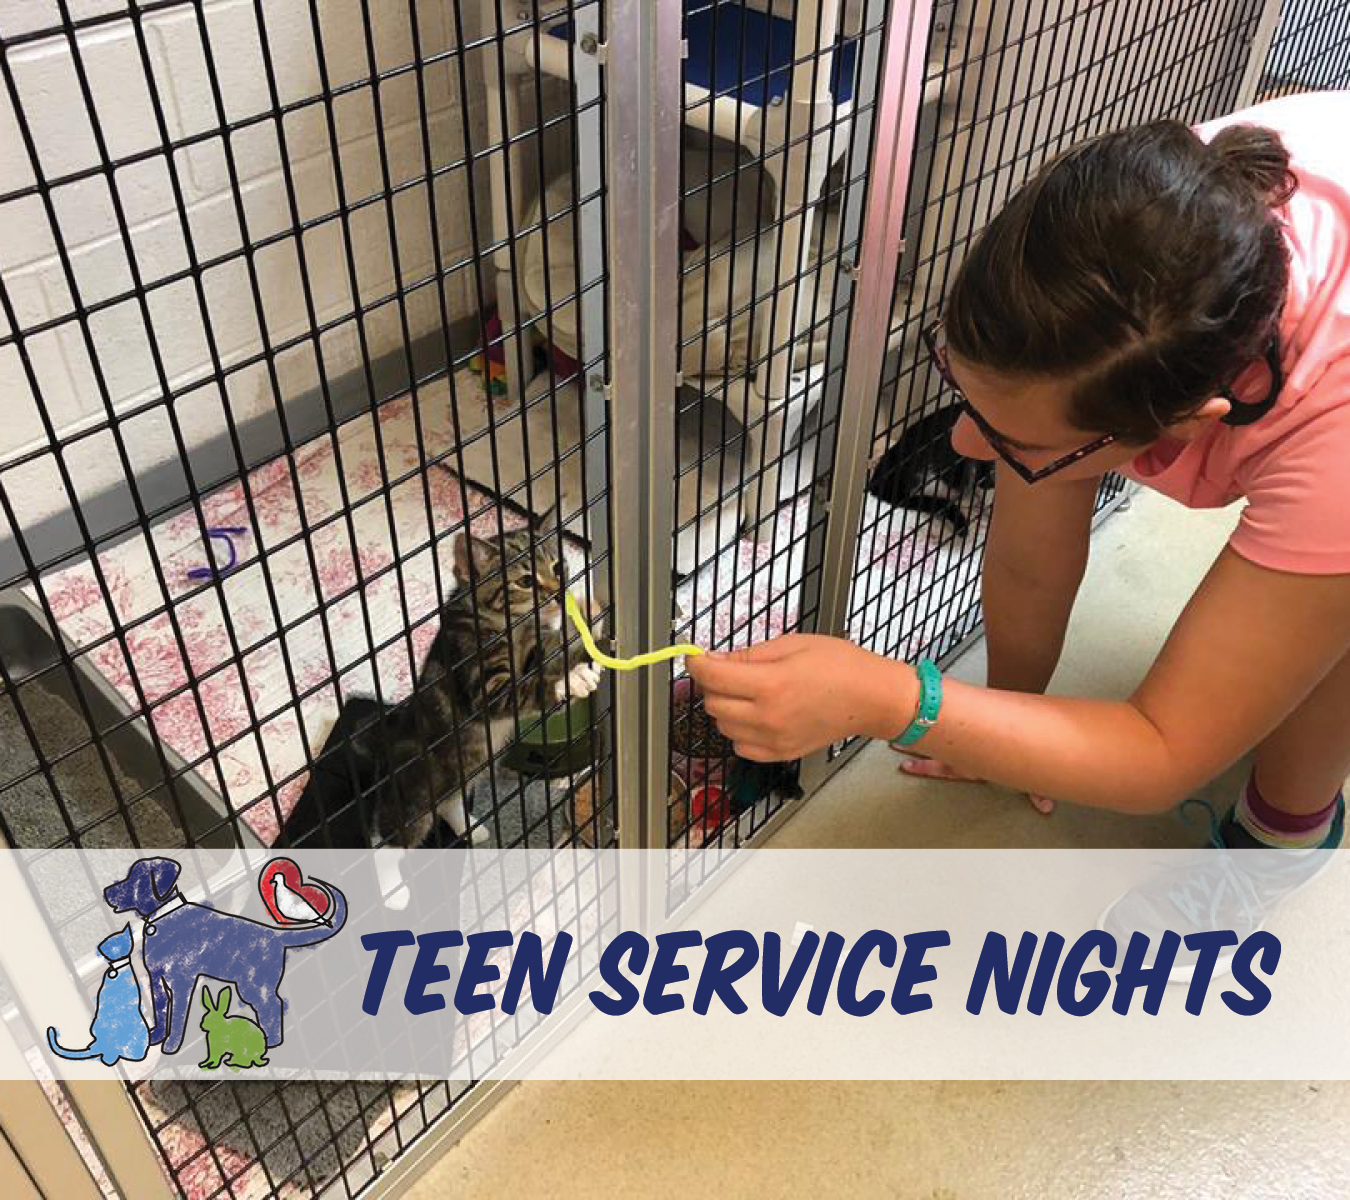 Teen Service Nights